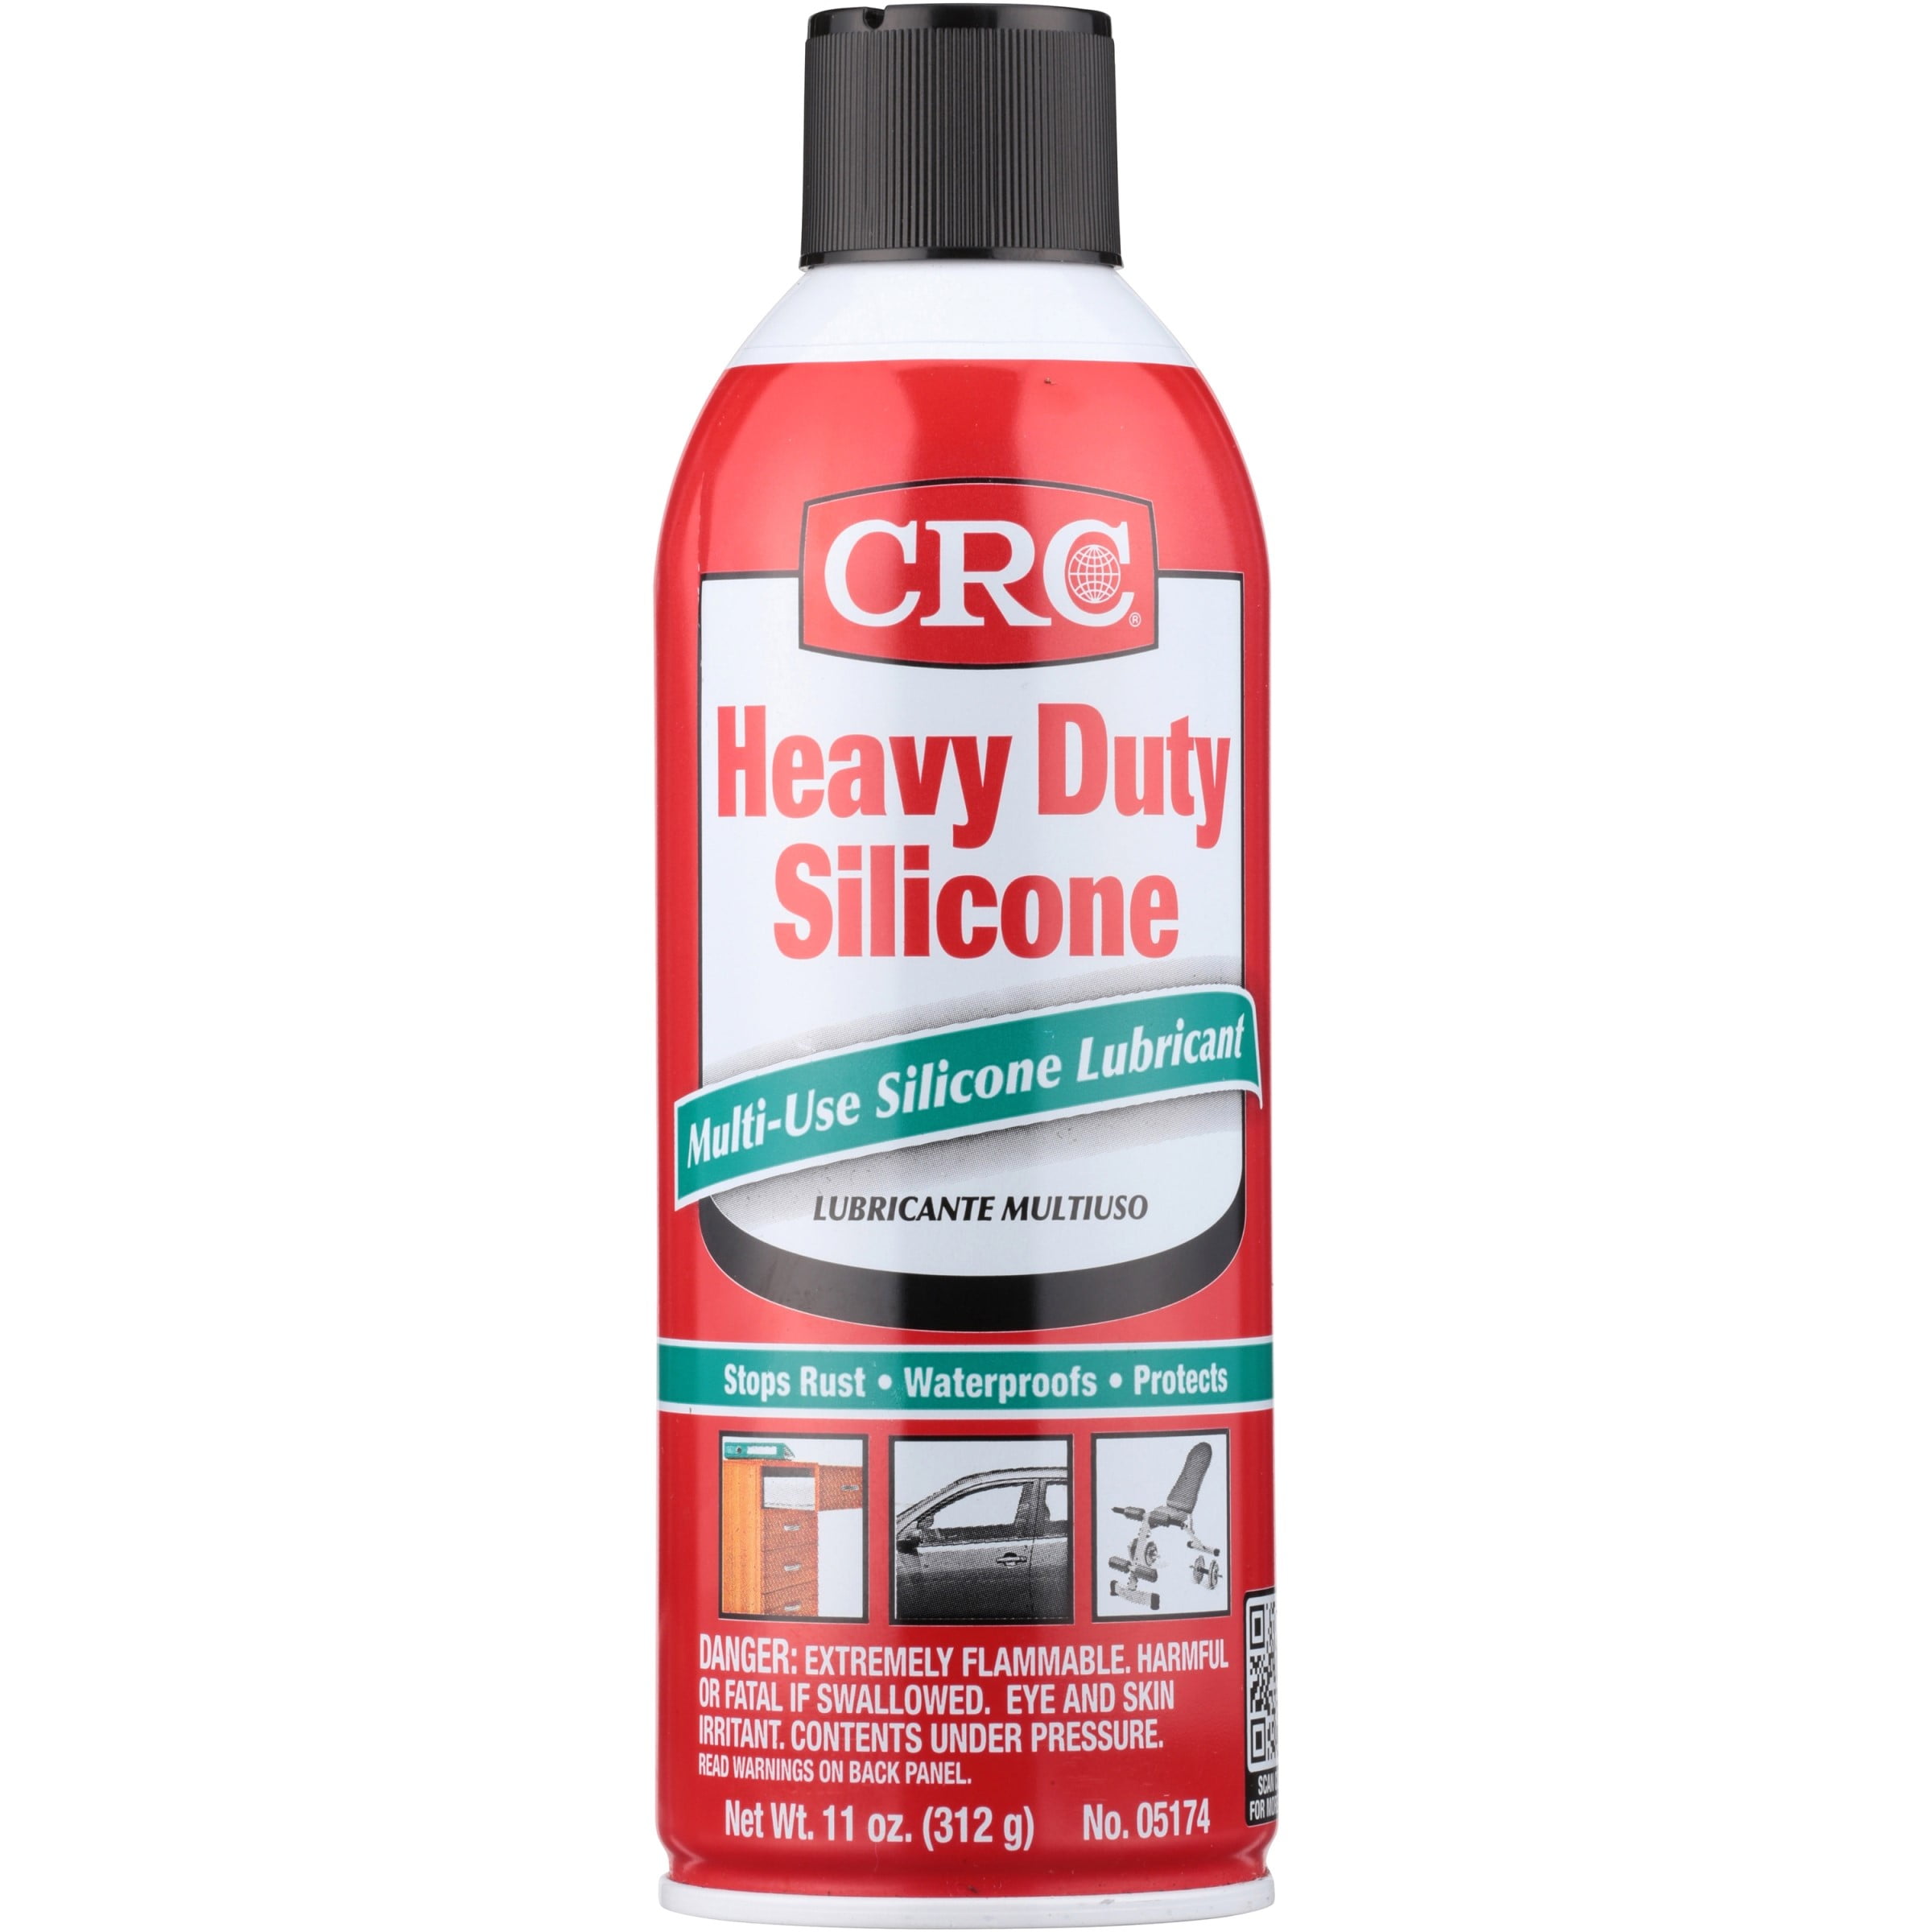 Super Slick Silicone Spray®